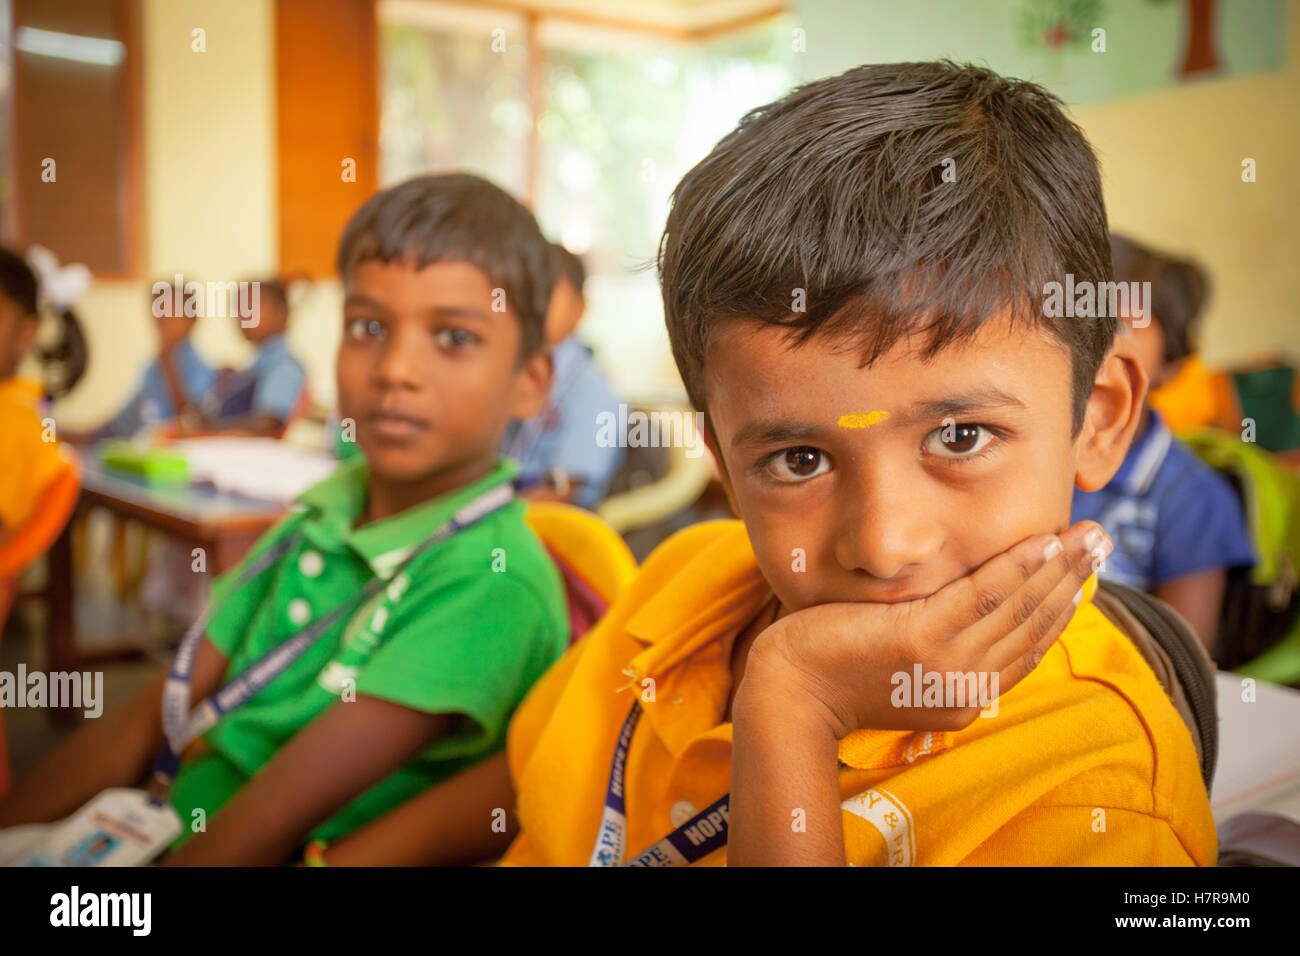 Les jeunes enfants de l'école primaire ou élémentaire assis à leur bureau dans une salle de classe, la Fondation espère que l'école, l'Inde Banque D'Images